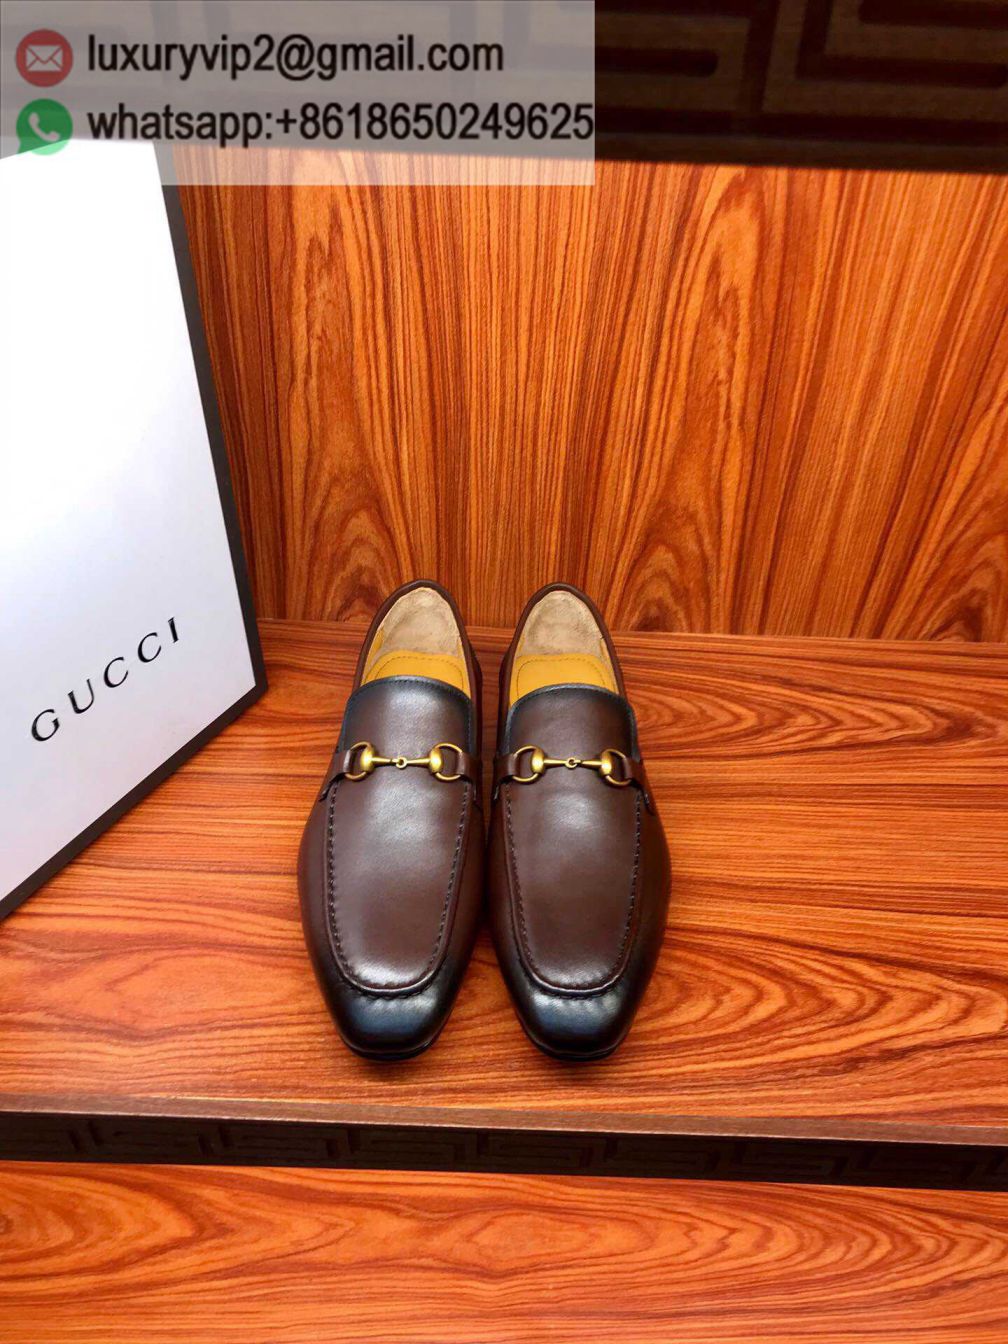 Gucci Men Leather Shoes